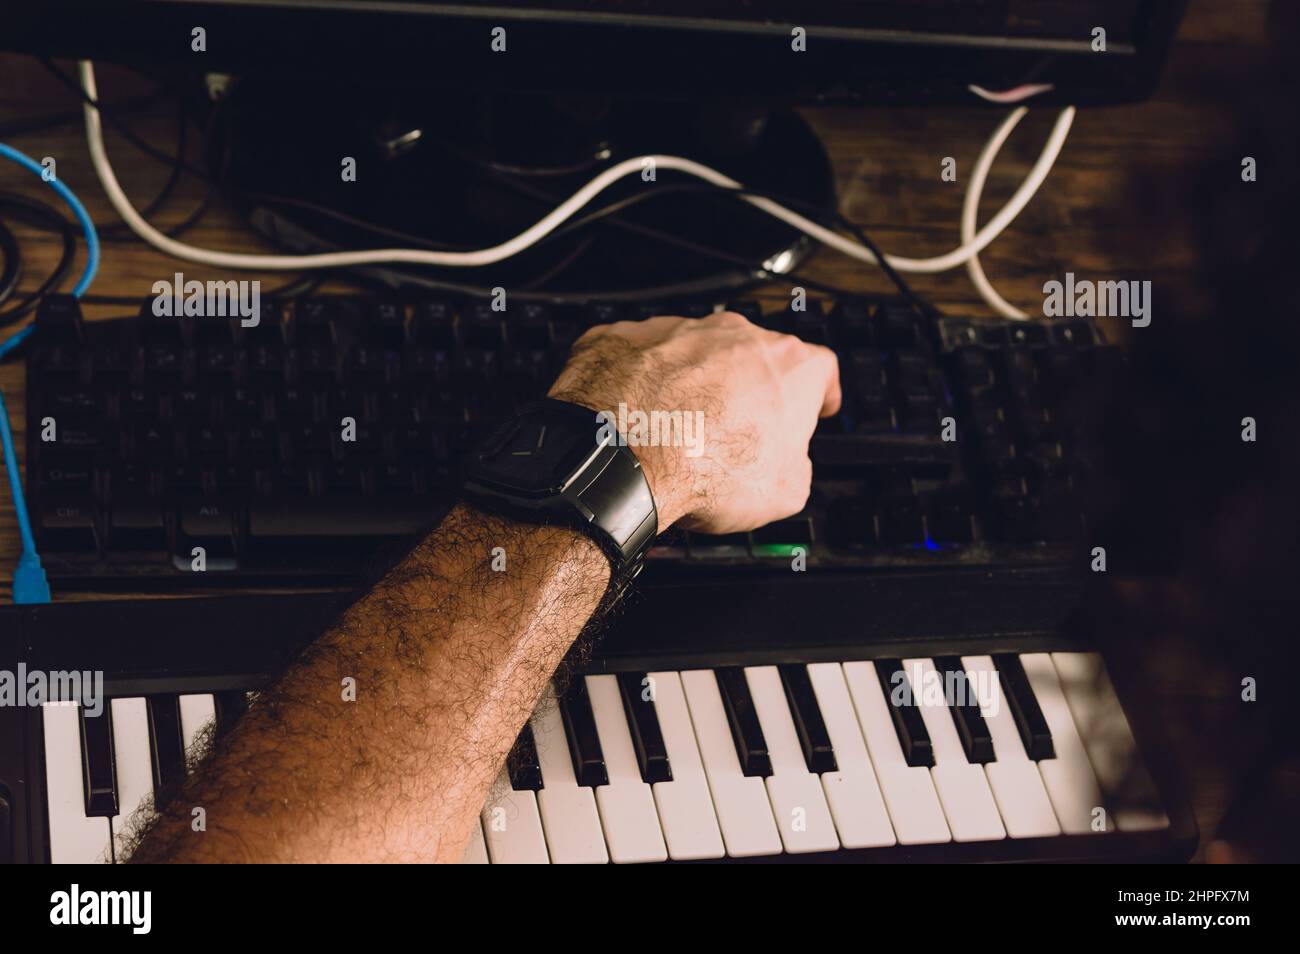 homme caucasien utilisant un clavier d'ordinateur produisant de la musique et la composition dans son studio à la maison, concept de production de musique. Banque D'Images